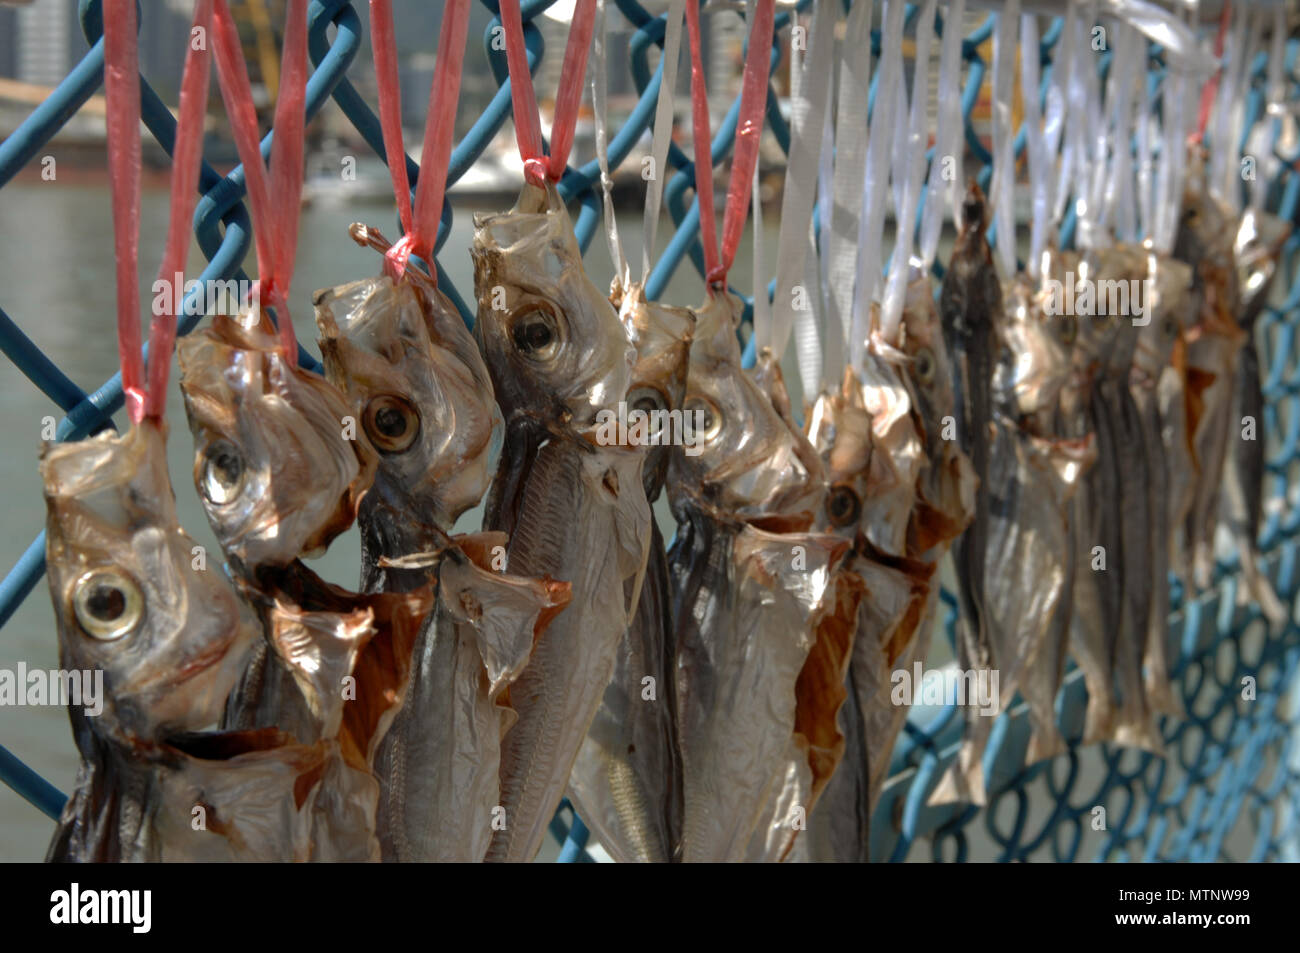 Fischfilets hängen am Zaun, um bei Sonnenschein zu trocknen, Macao, China. Stockfoto